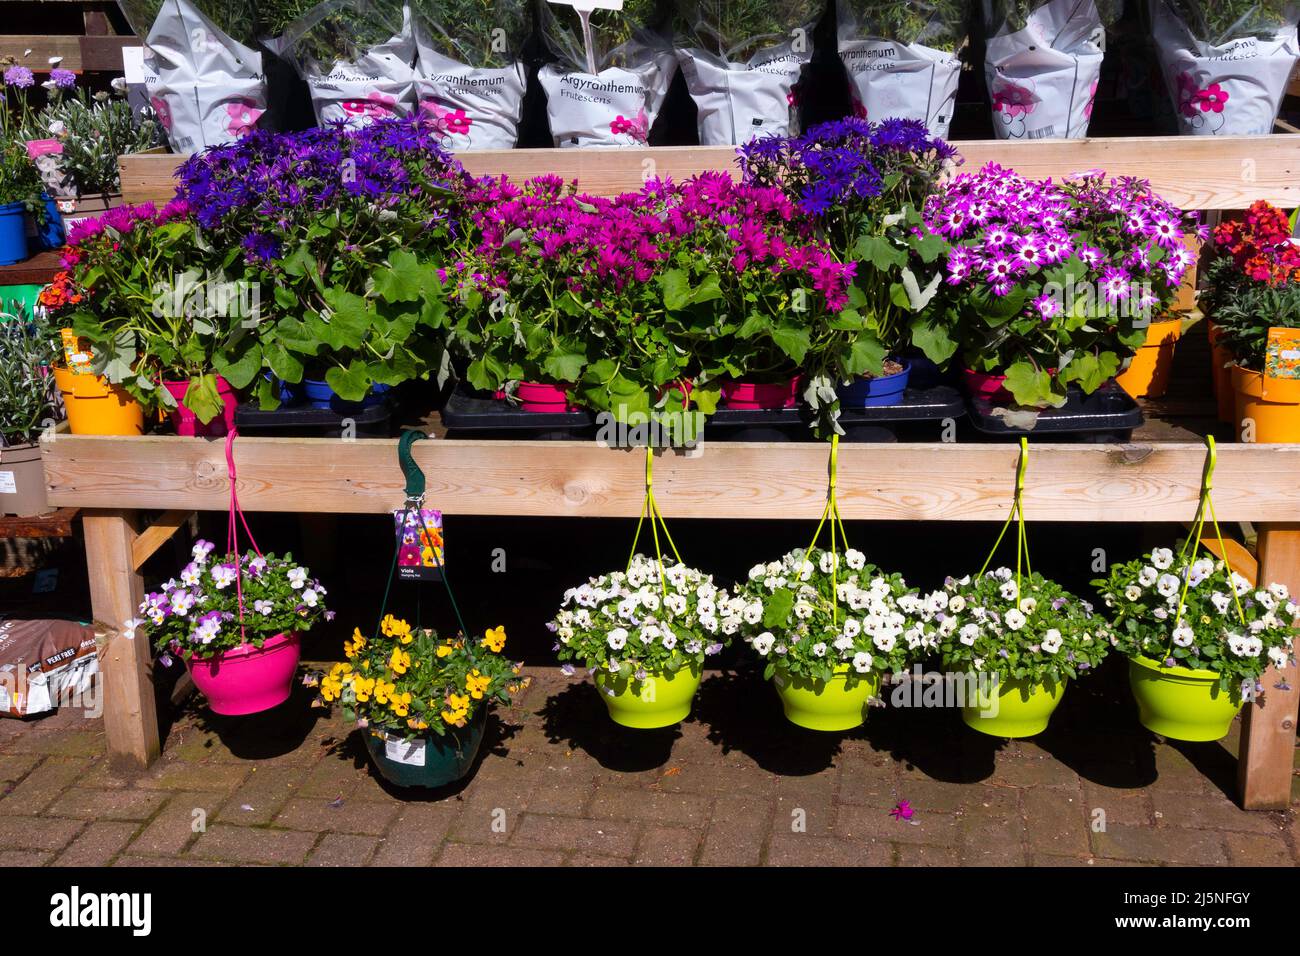 Une exposition attrayante de plantes en pot assorties et paniers suspendus à l'entrée d'un centre de jardin lors d'une journée de printemps ensoleillée Banque D'Images